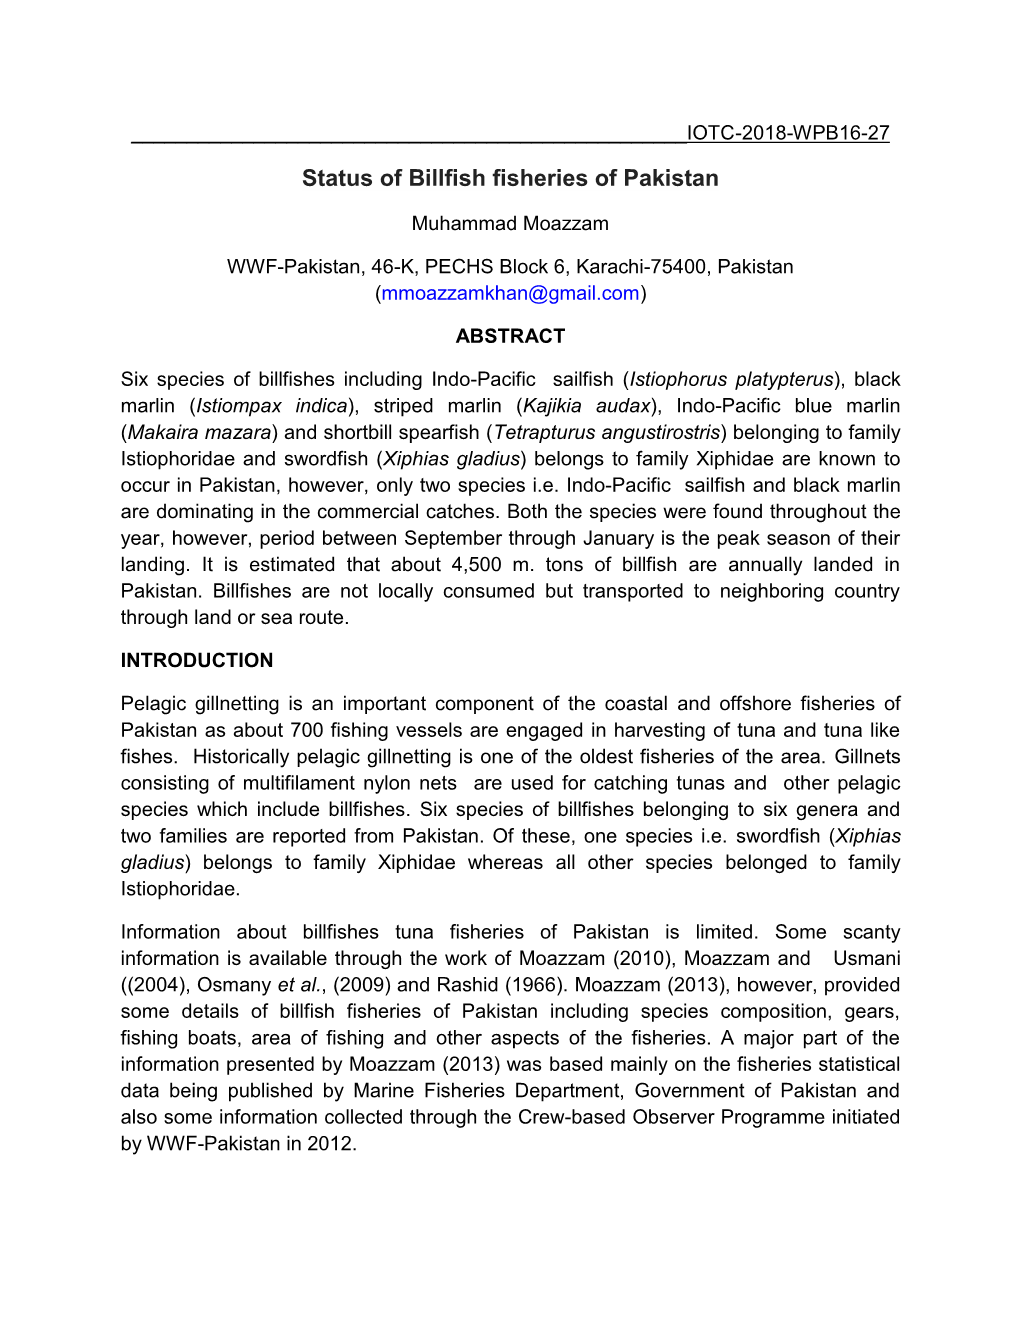 Status of Billfish Fisheries of Pakistan